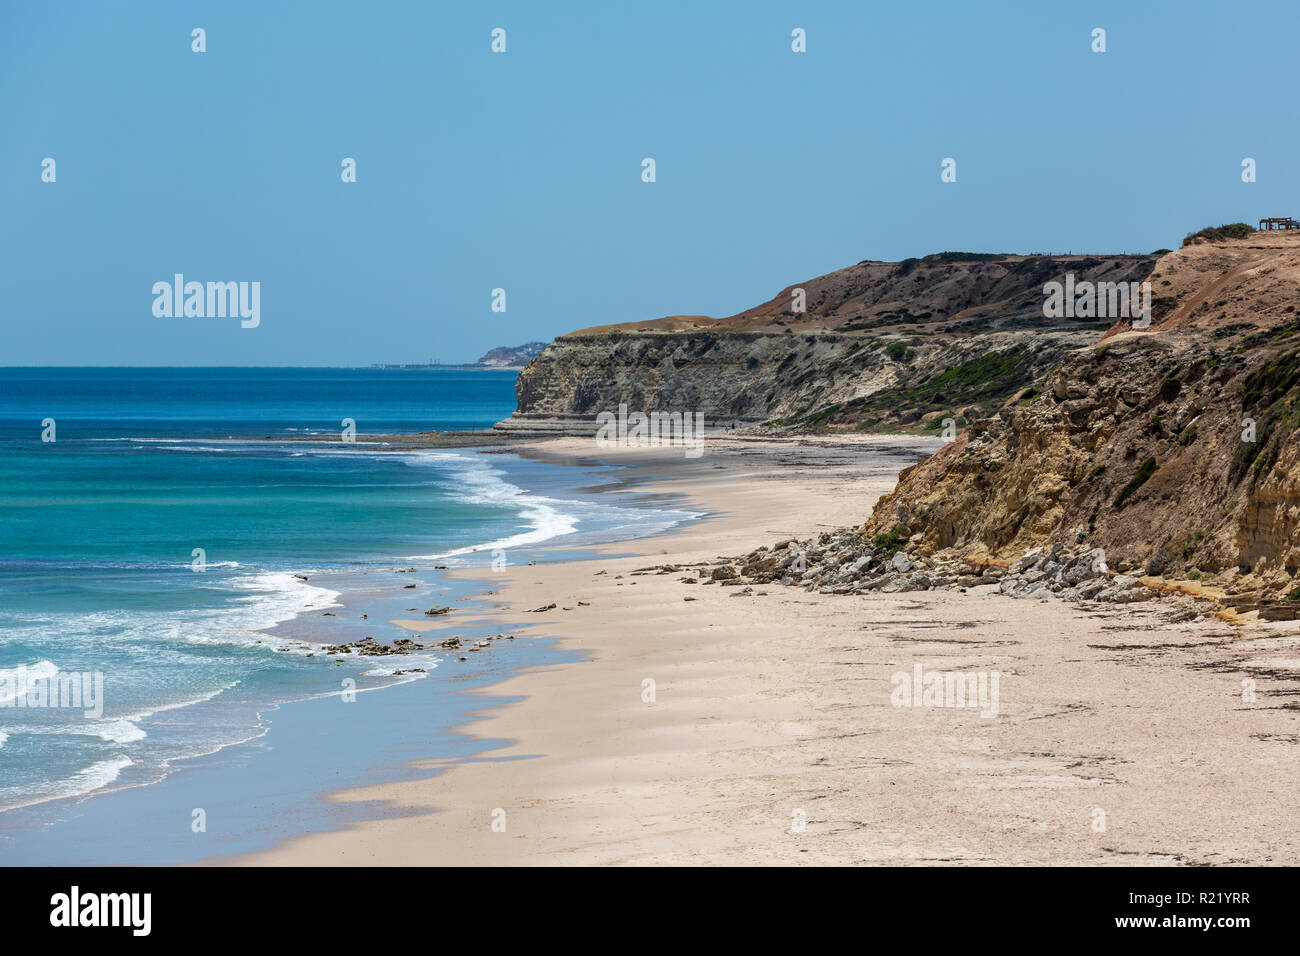 La belle plage de Port Alan Jaume & fils et ses eaux turquoises sur une calme journée ensoleillée le 15 novembre 2018 Banque D'Images